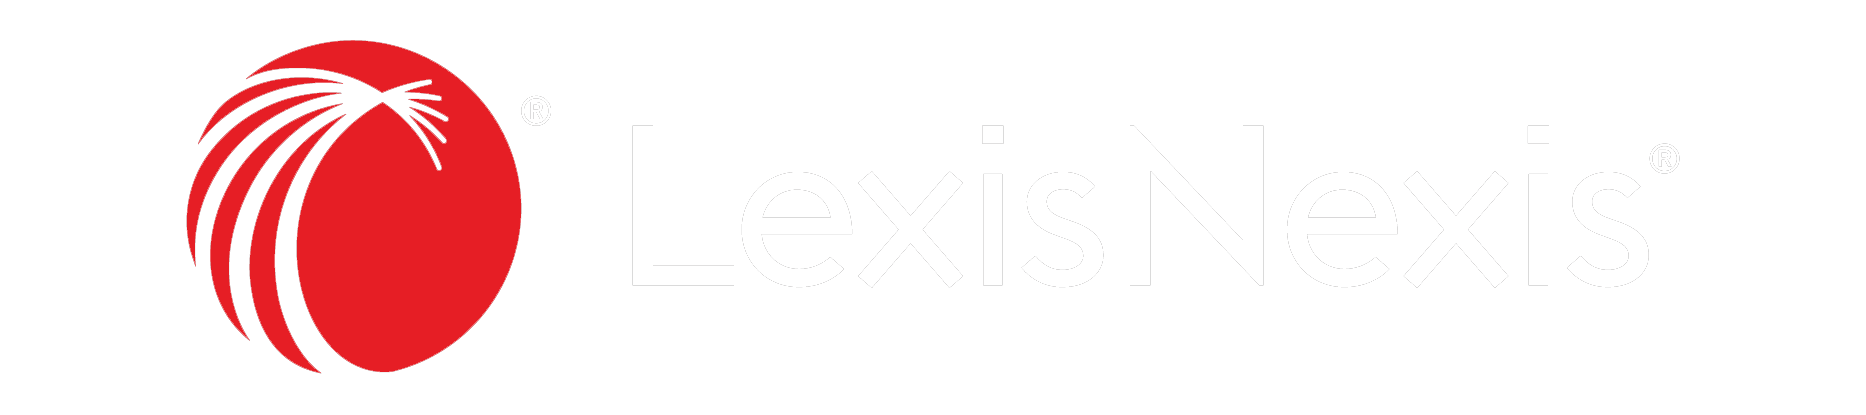 relx logo - juris